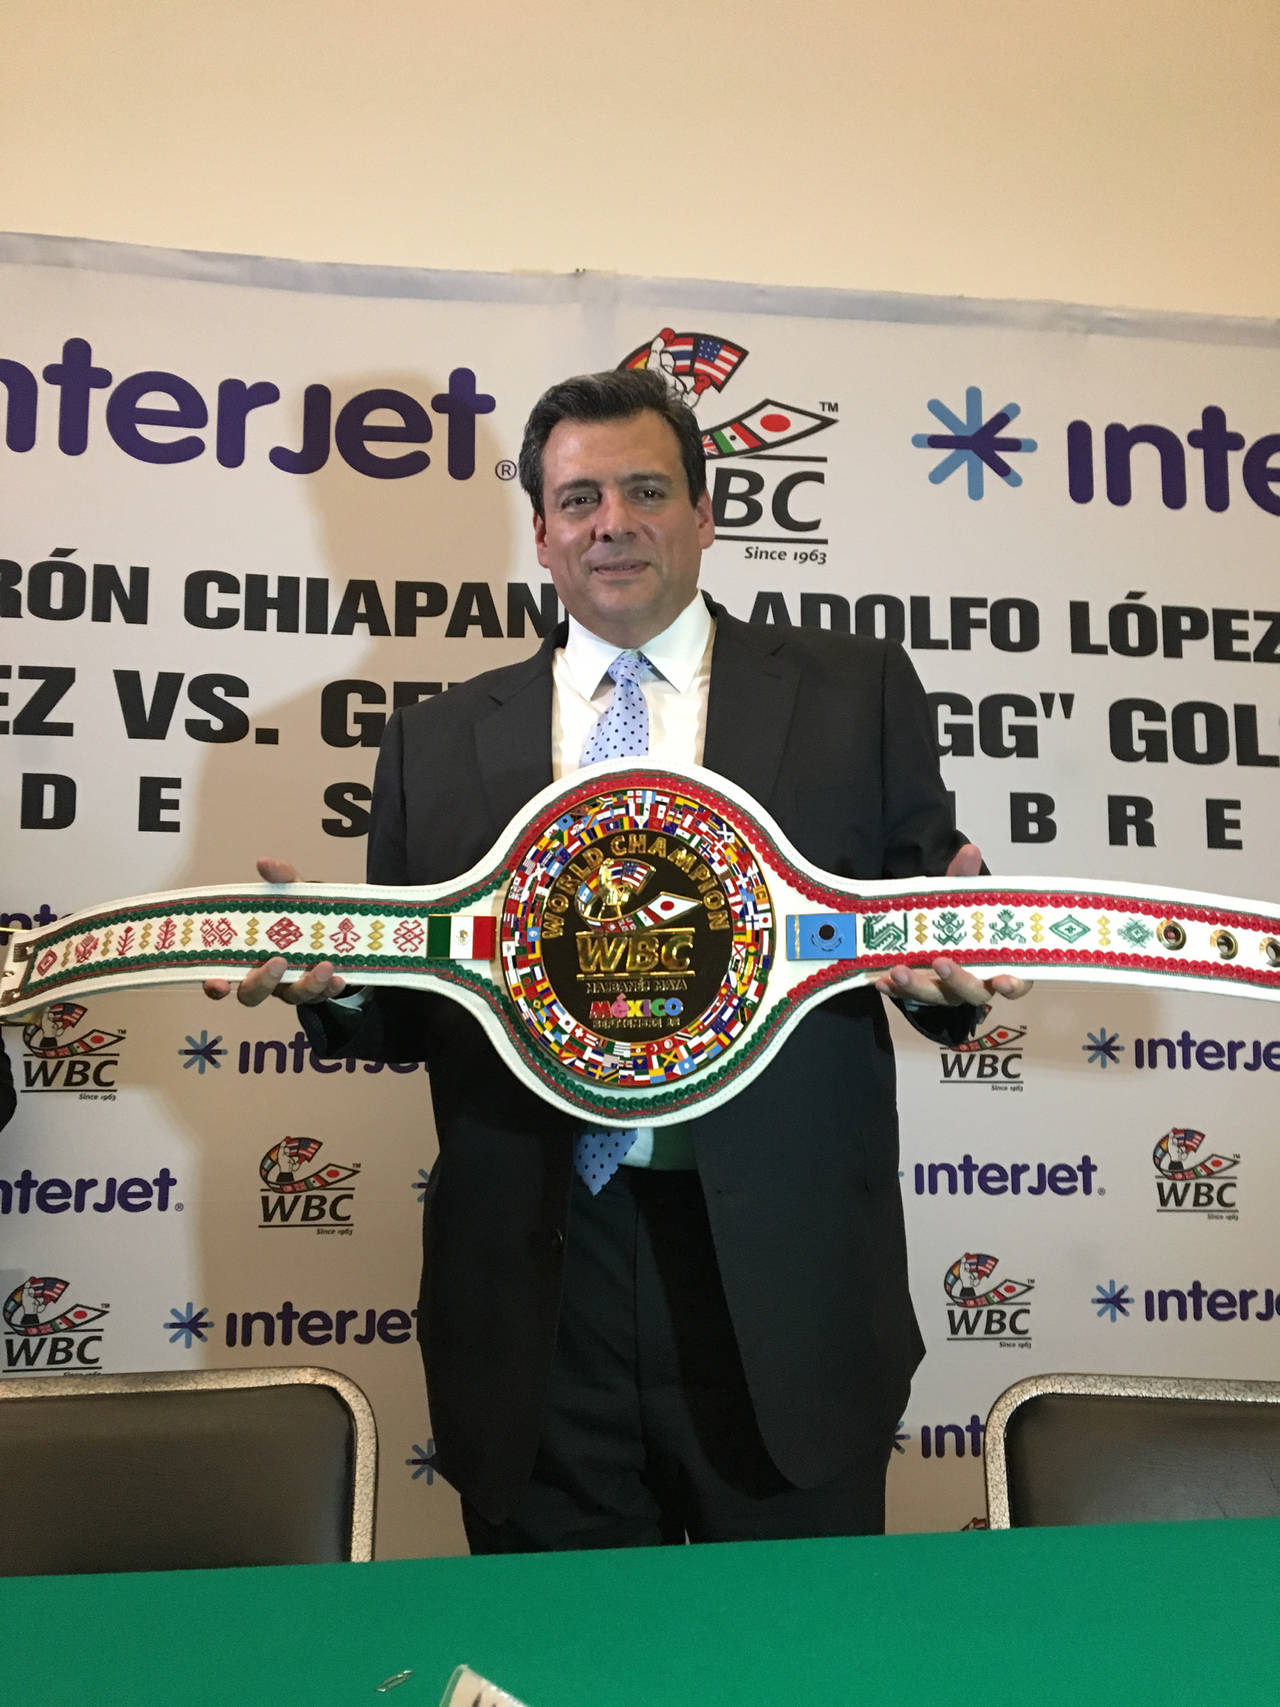 Ayer se presentó el cinturón chiapaneco Adolfo López Mateos, fajín que se le entregará al ganador. (Notimex)